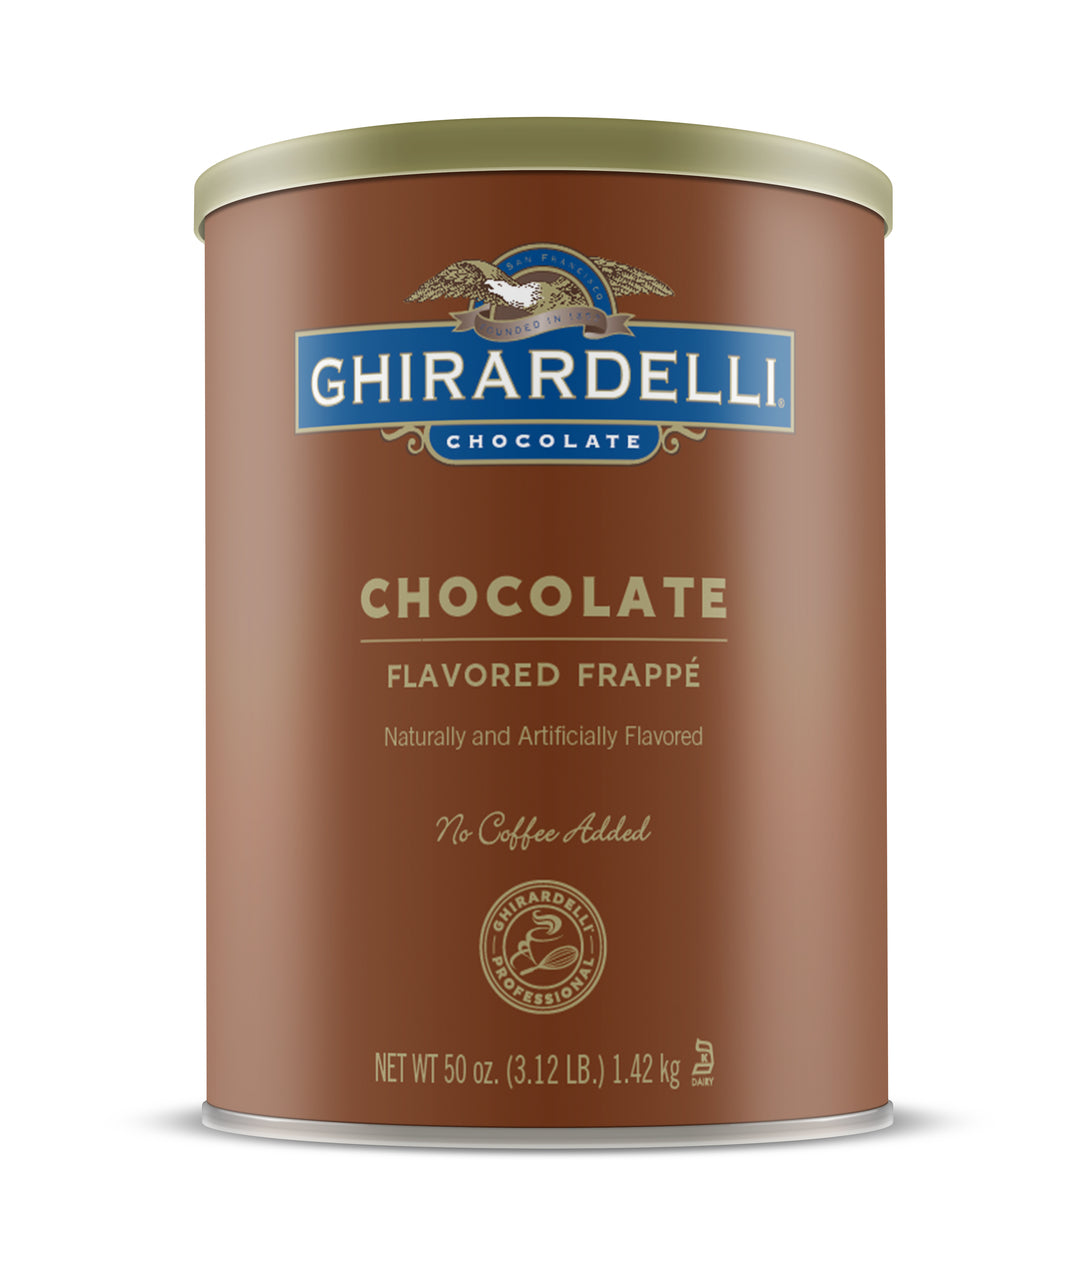 Ghirardelli Frappe Classico - 3.12 lb. Can: Chocolate